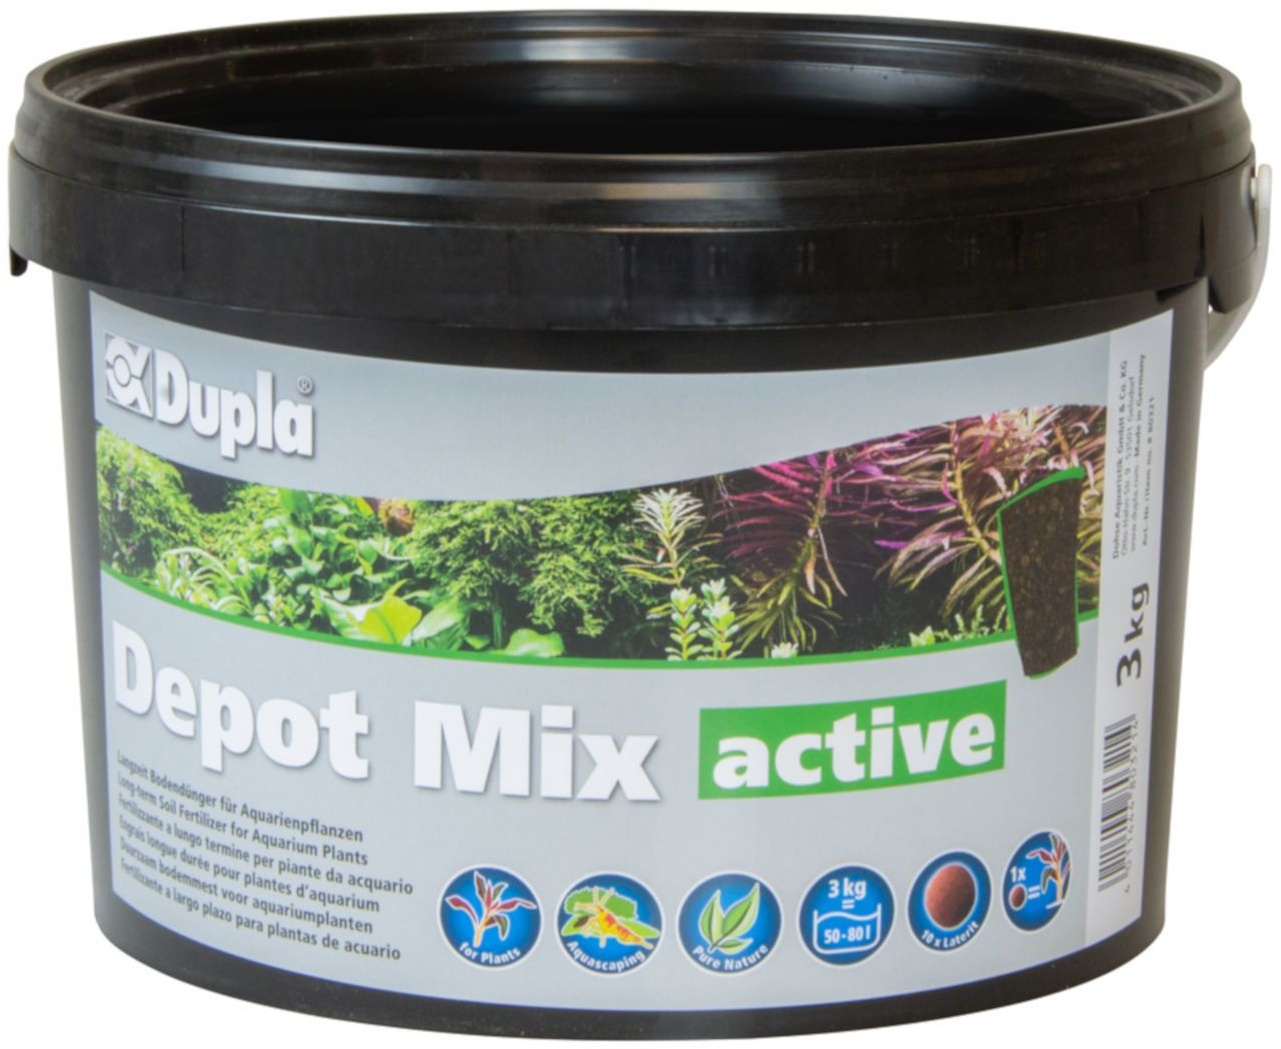 Dupla Depot Mix active, Langzeit-Bodendünger 3 kg